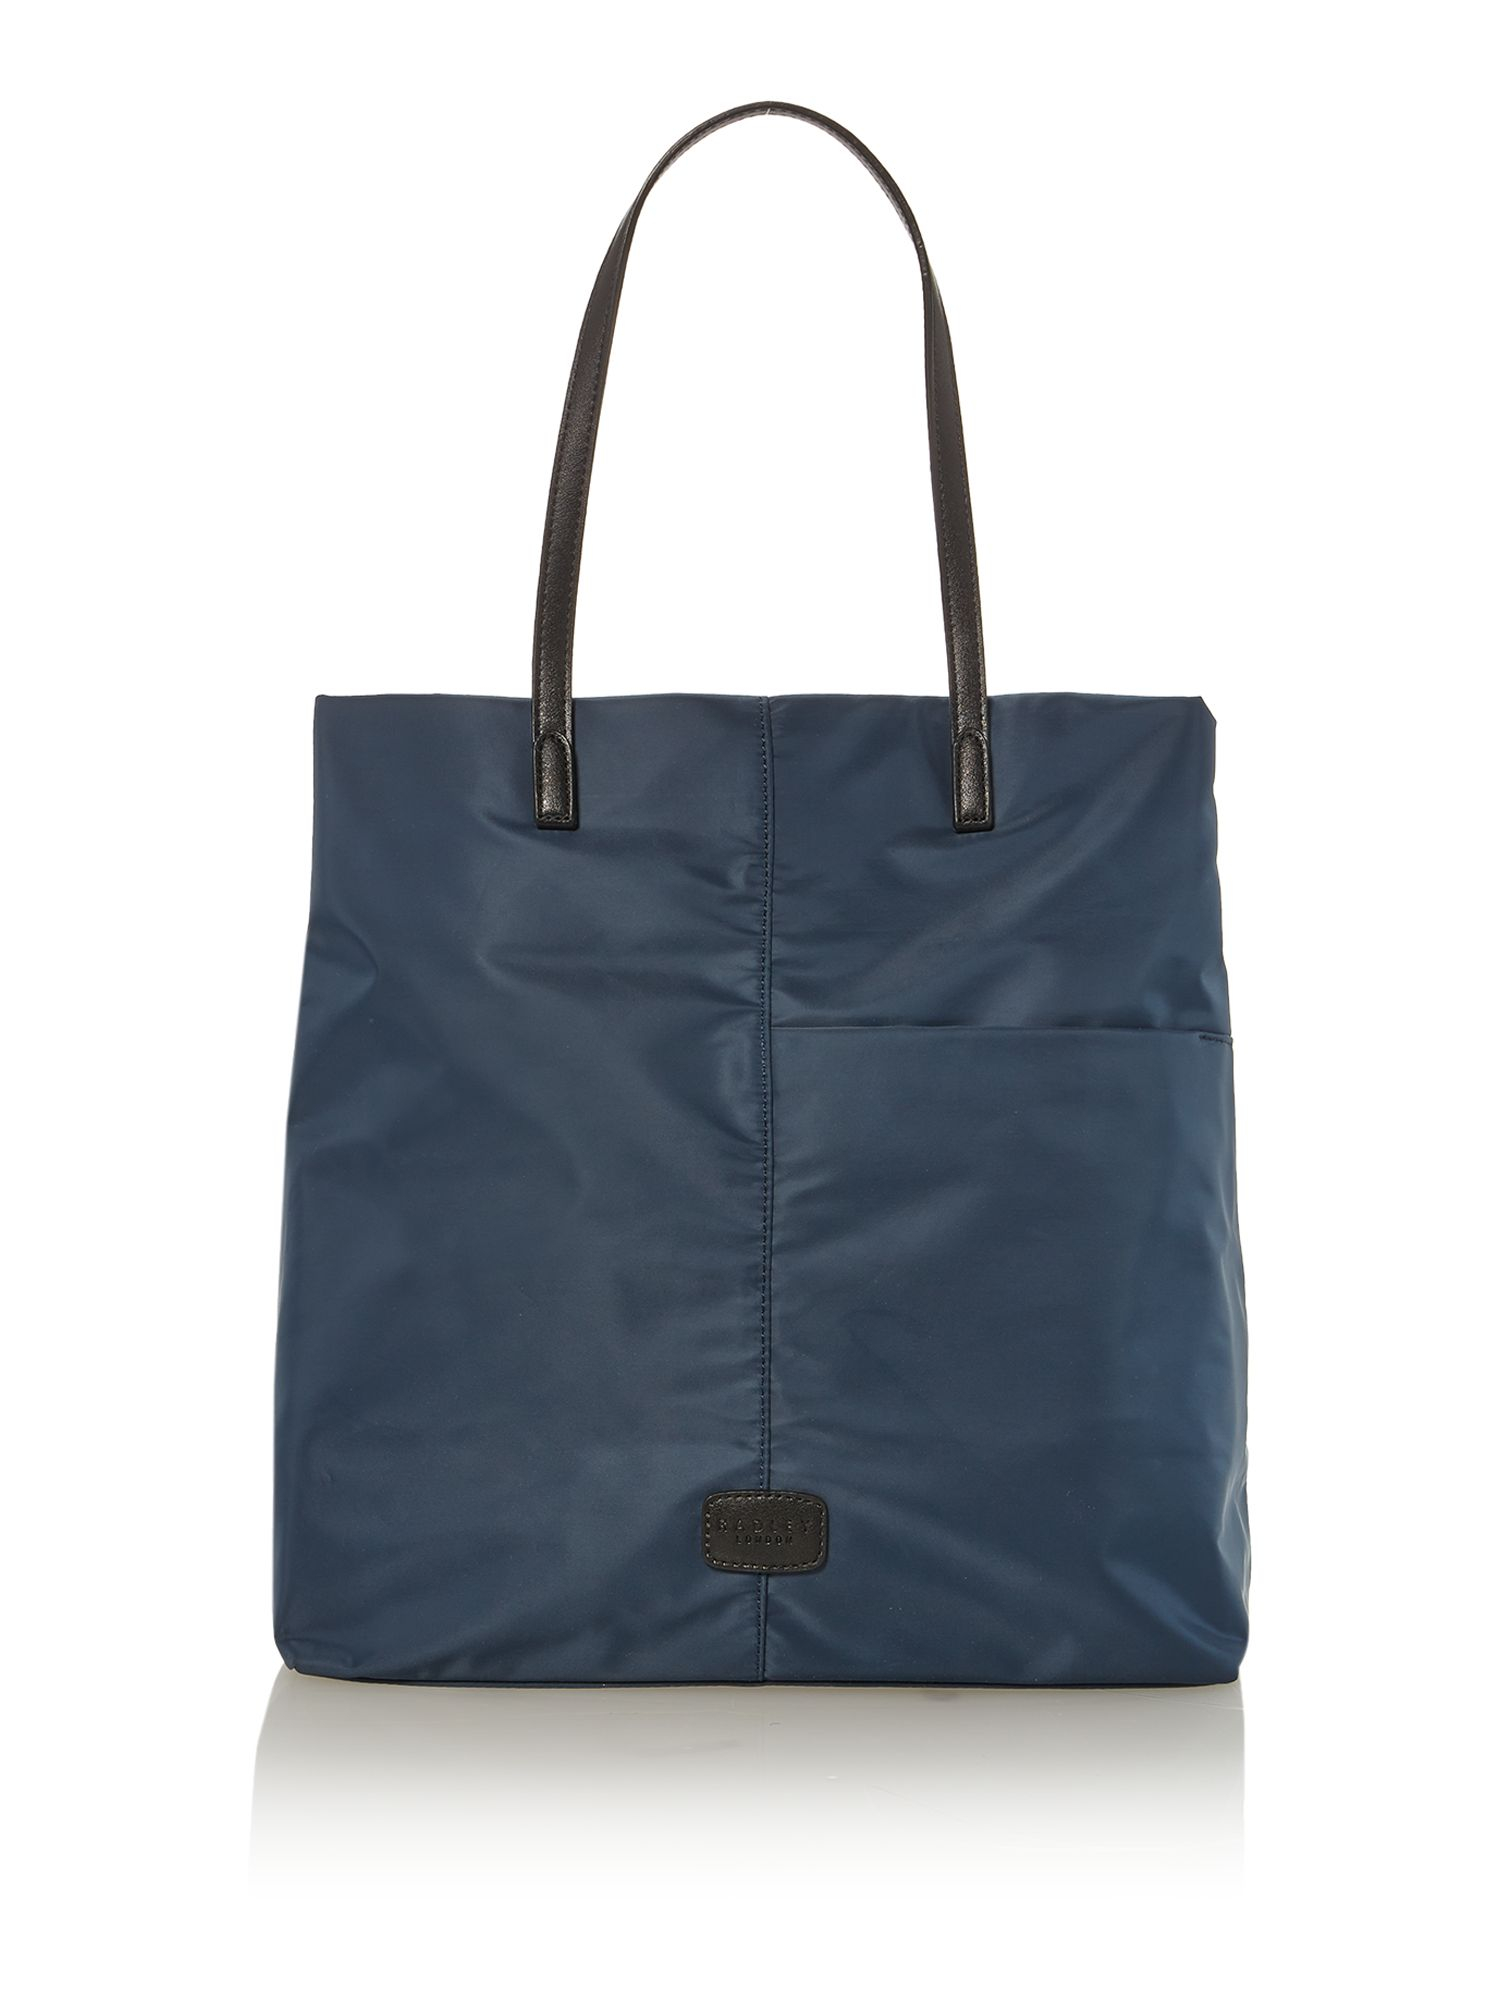 Radley Petticoat Navy Large Ziptop Ew Leather Tote Bag in Blue (Navy) | Lyst